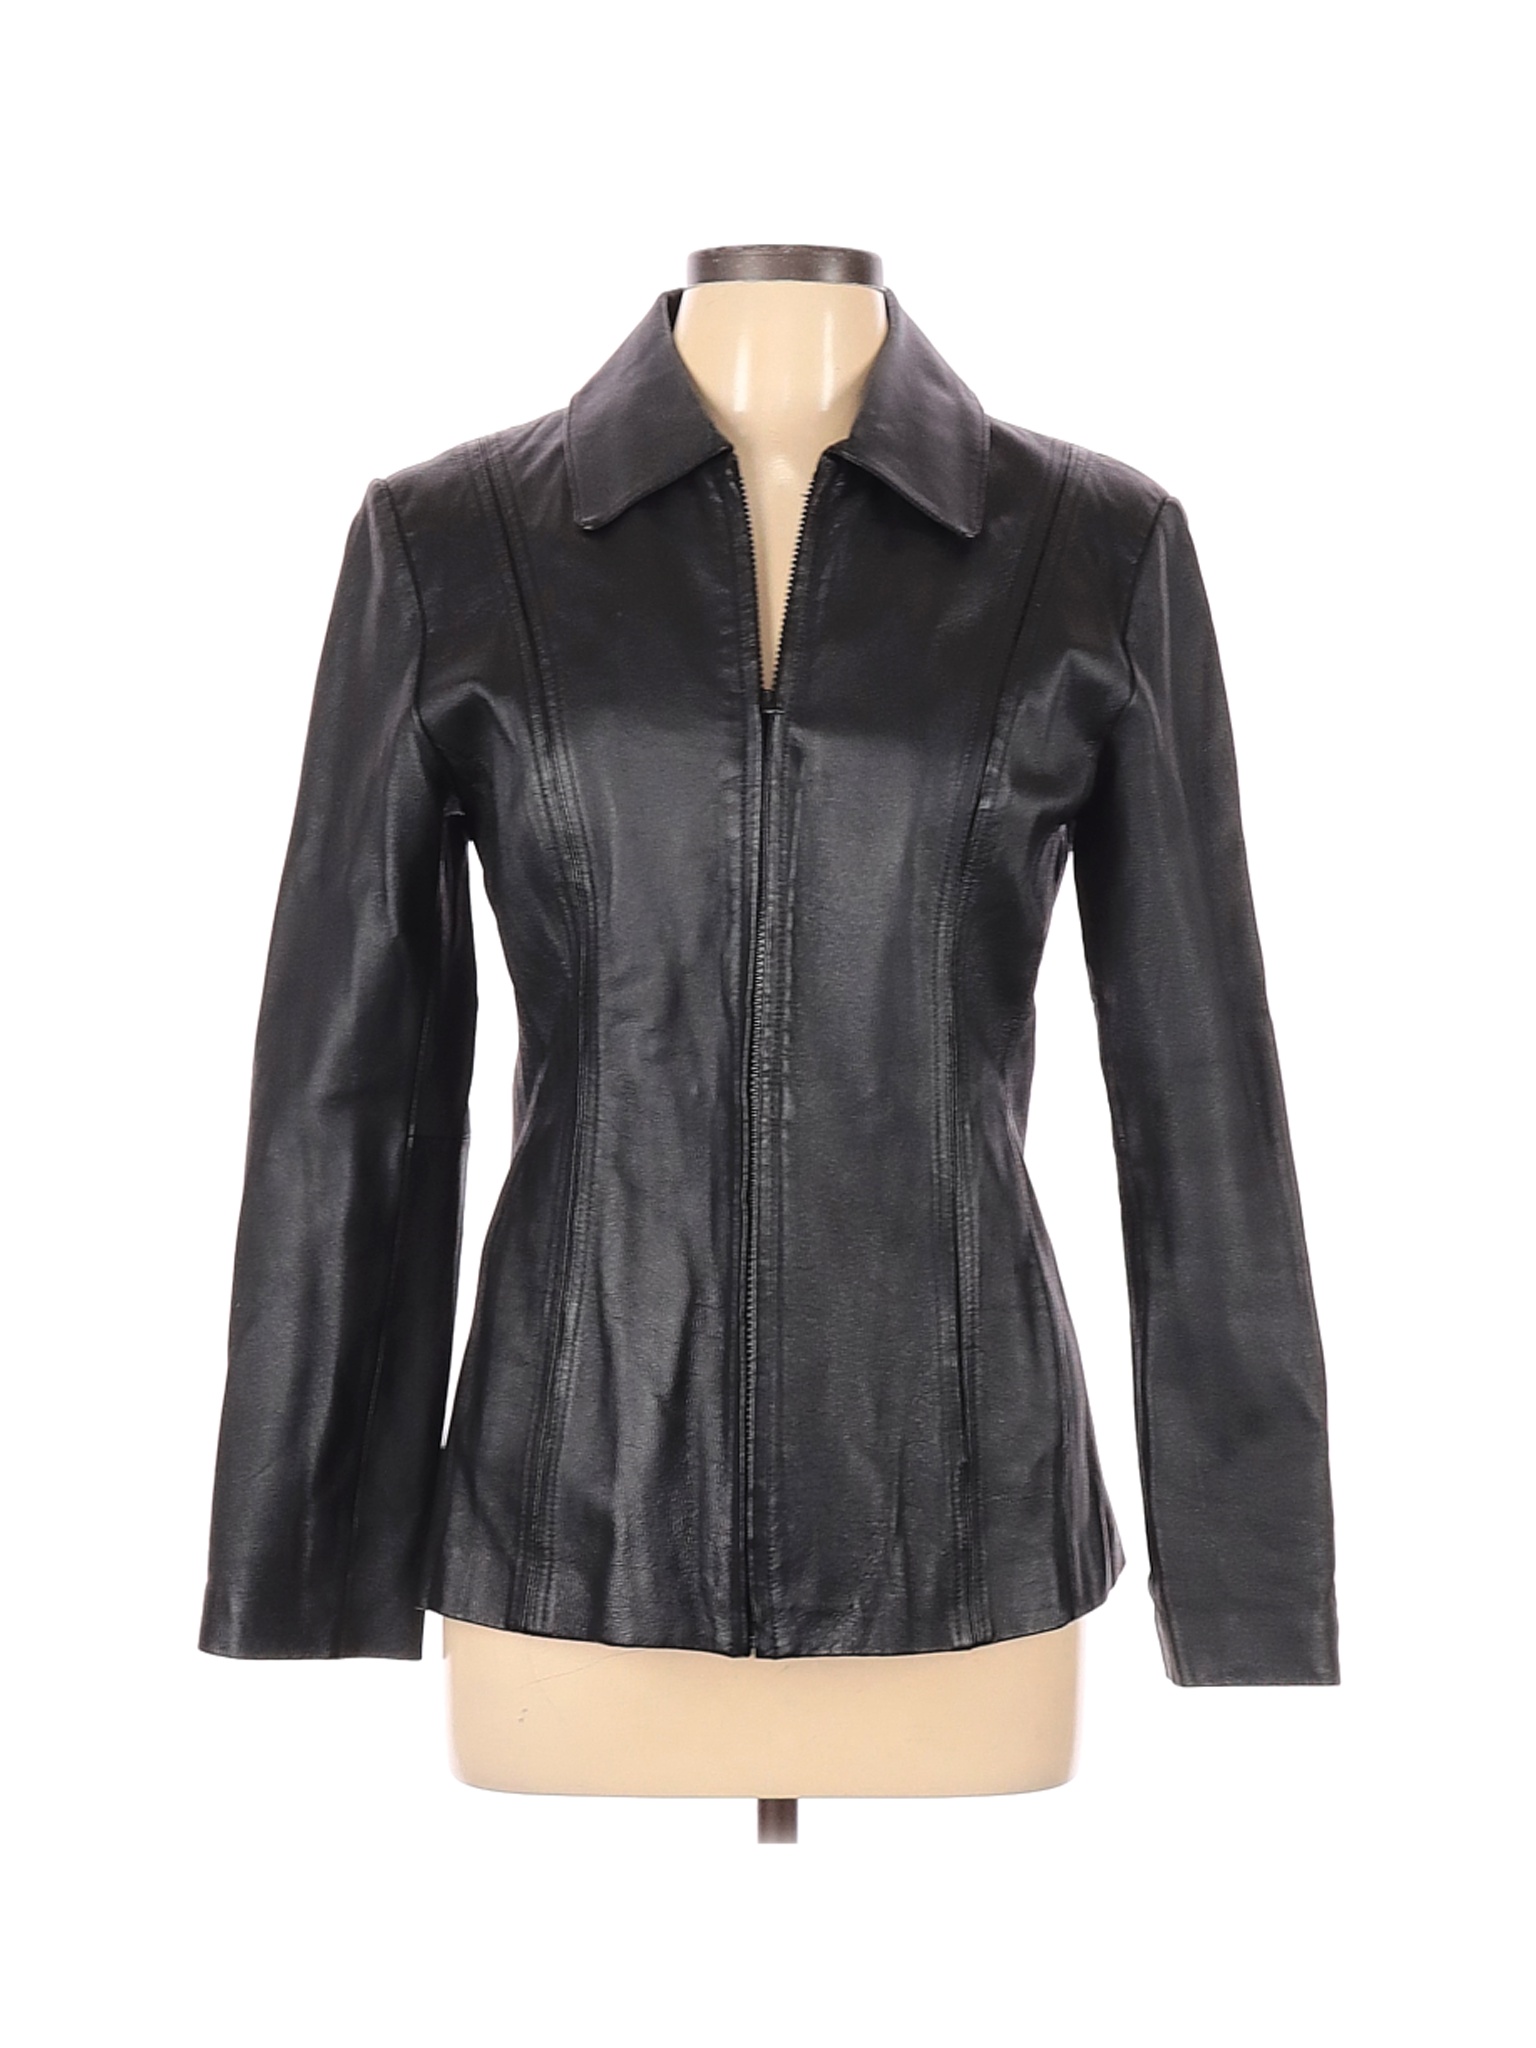 Worthington Women Black Leather Jacket S | eBay